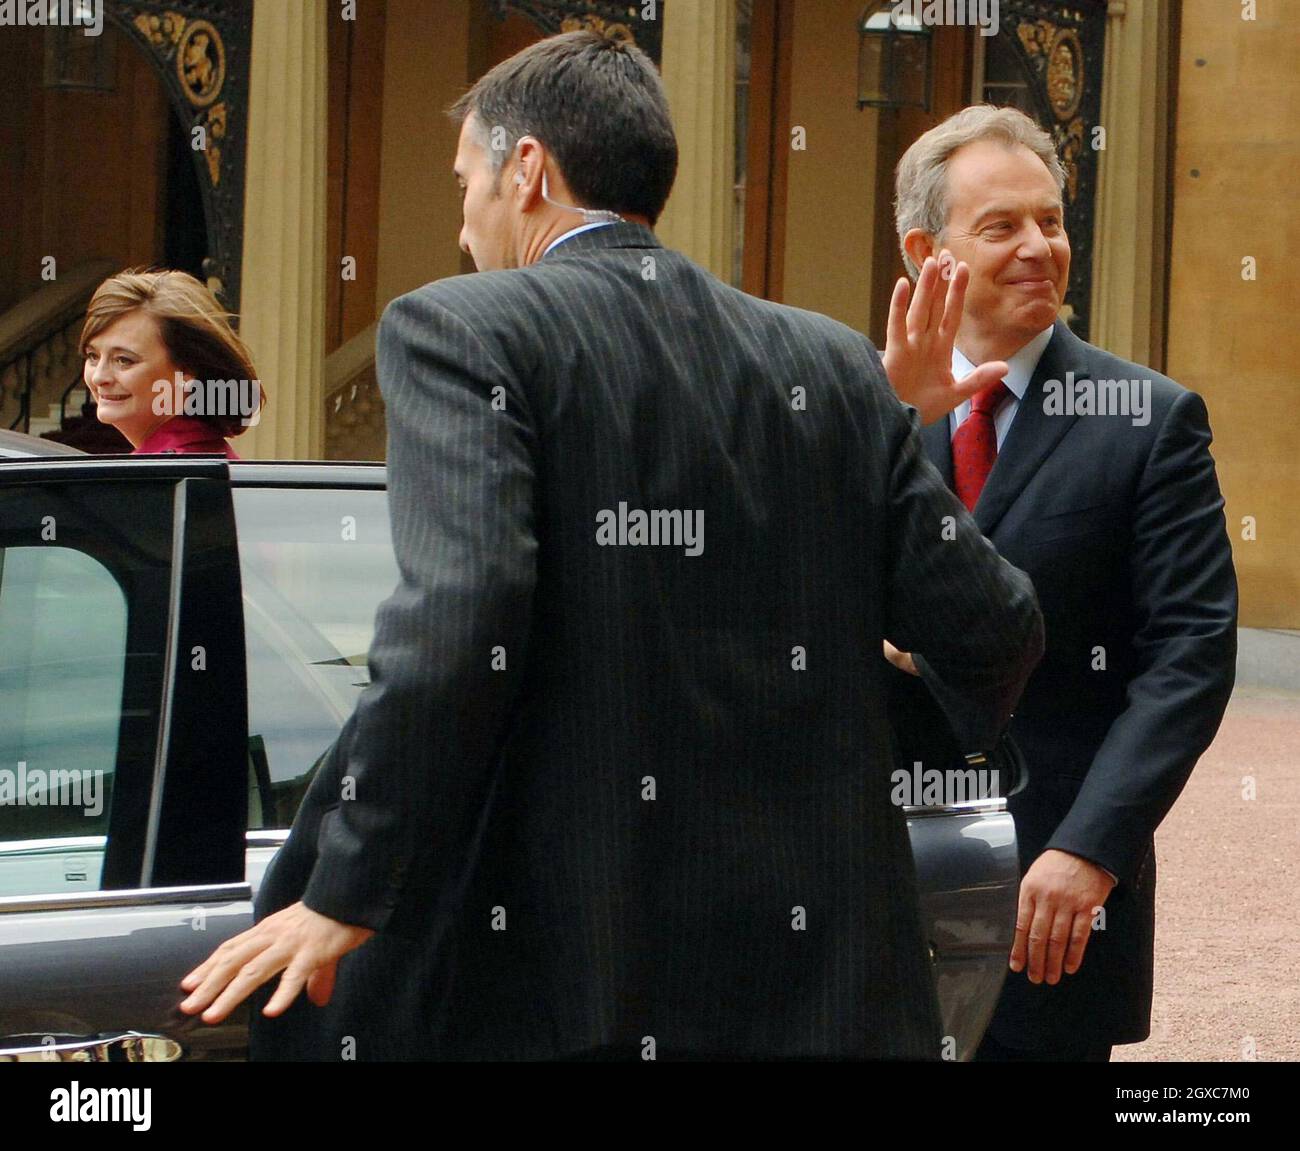 Premierminister Tony Blair verlässt in Begleitung seiner Frau Cherie den Buckingham Palace, nachdem er am 27. Juni 2007 Königin Elizabeth II seinen Rücktritt angeboten hatte. Stockfoto